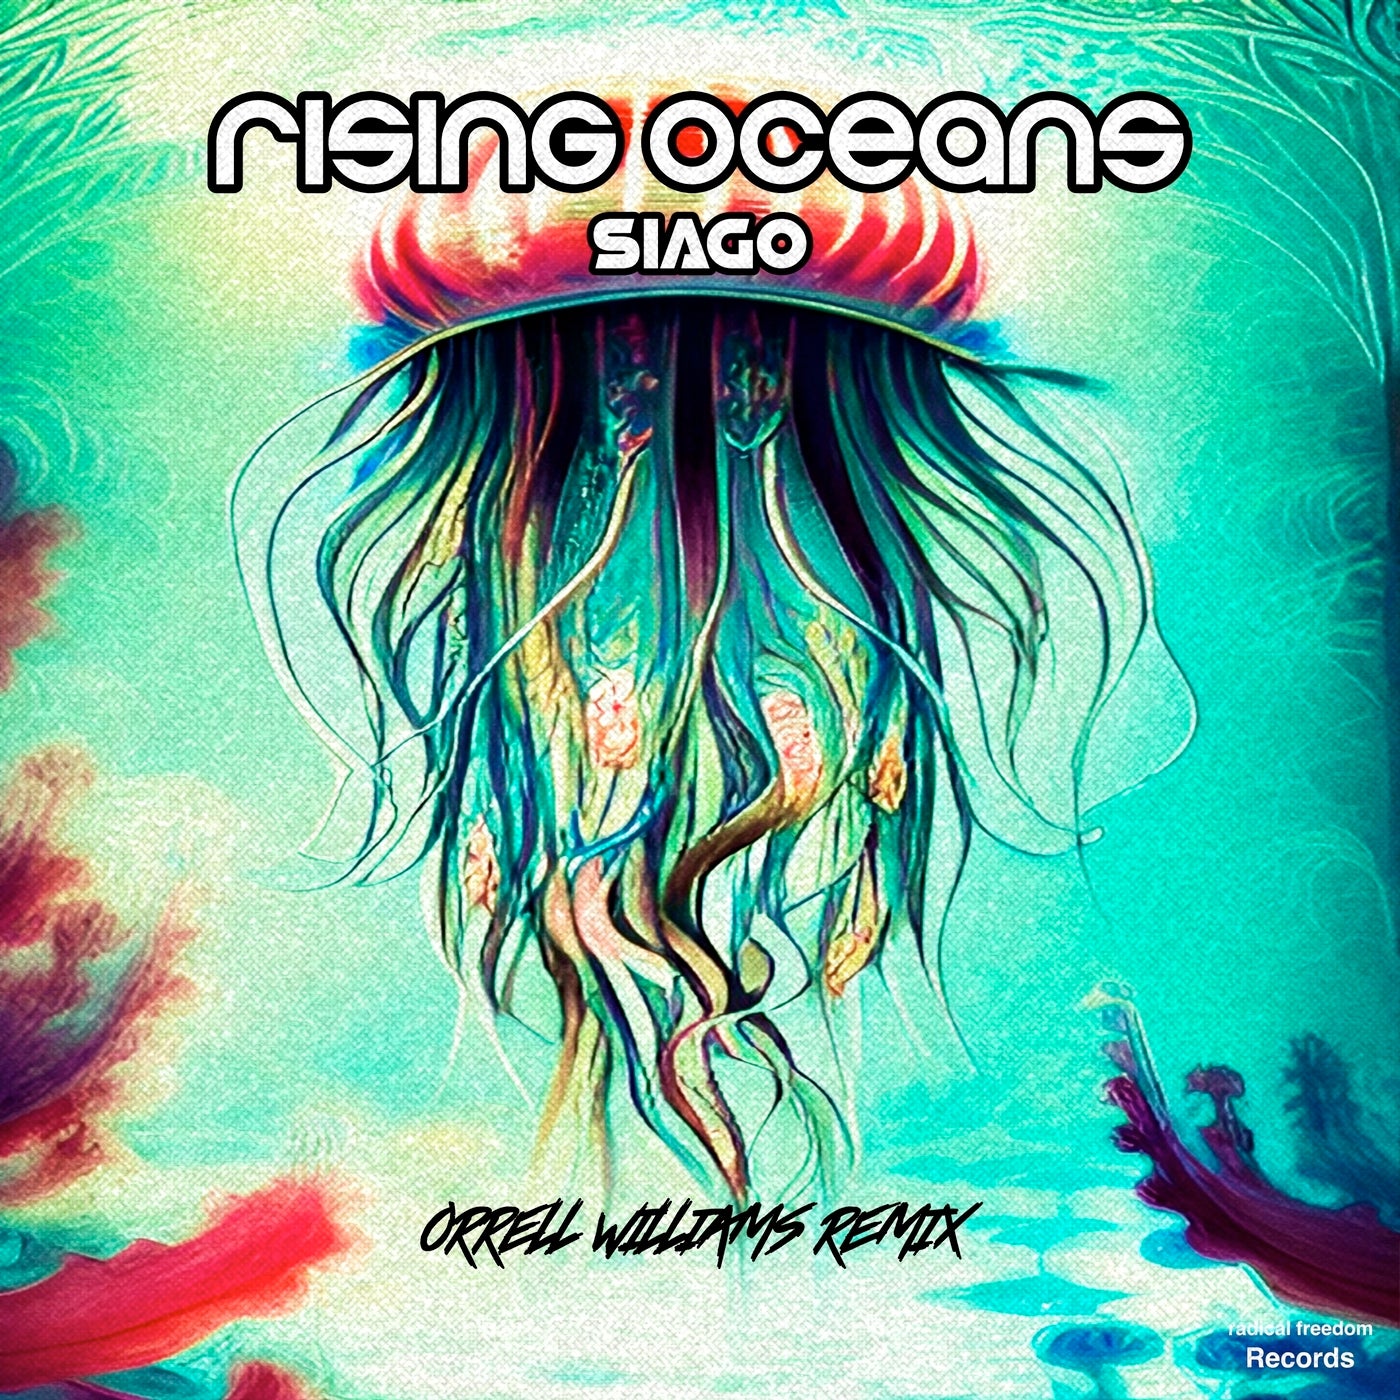 Rising Oceans (Orrell Williams Remix) (feat. Siago)